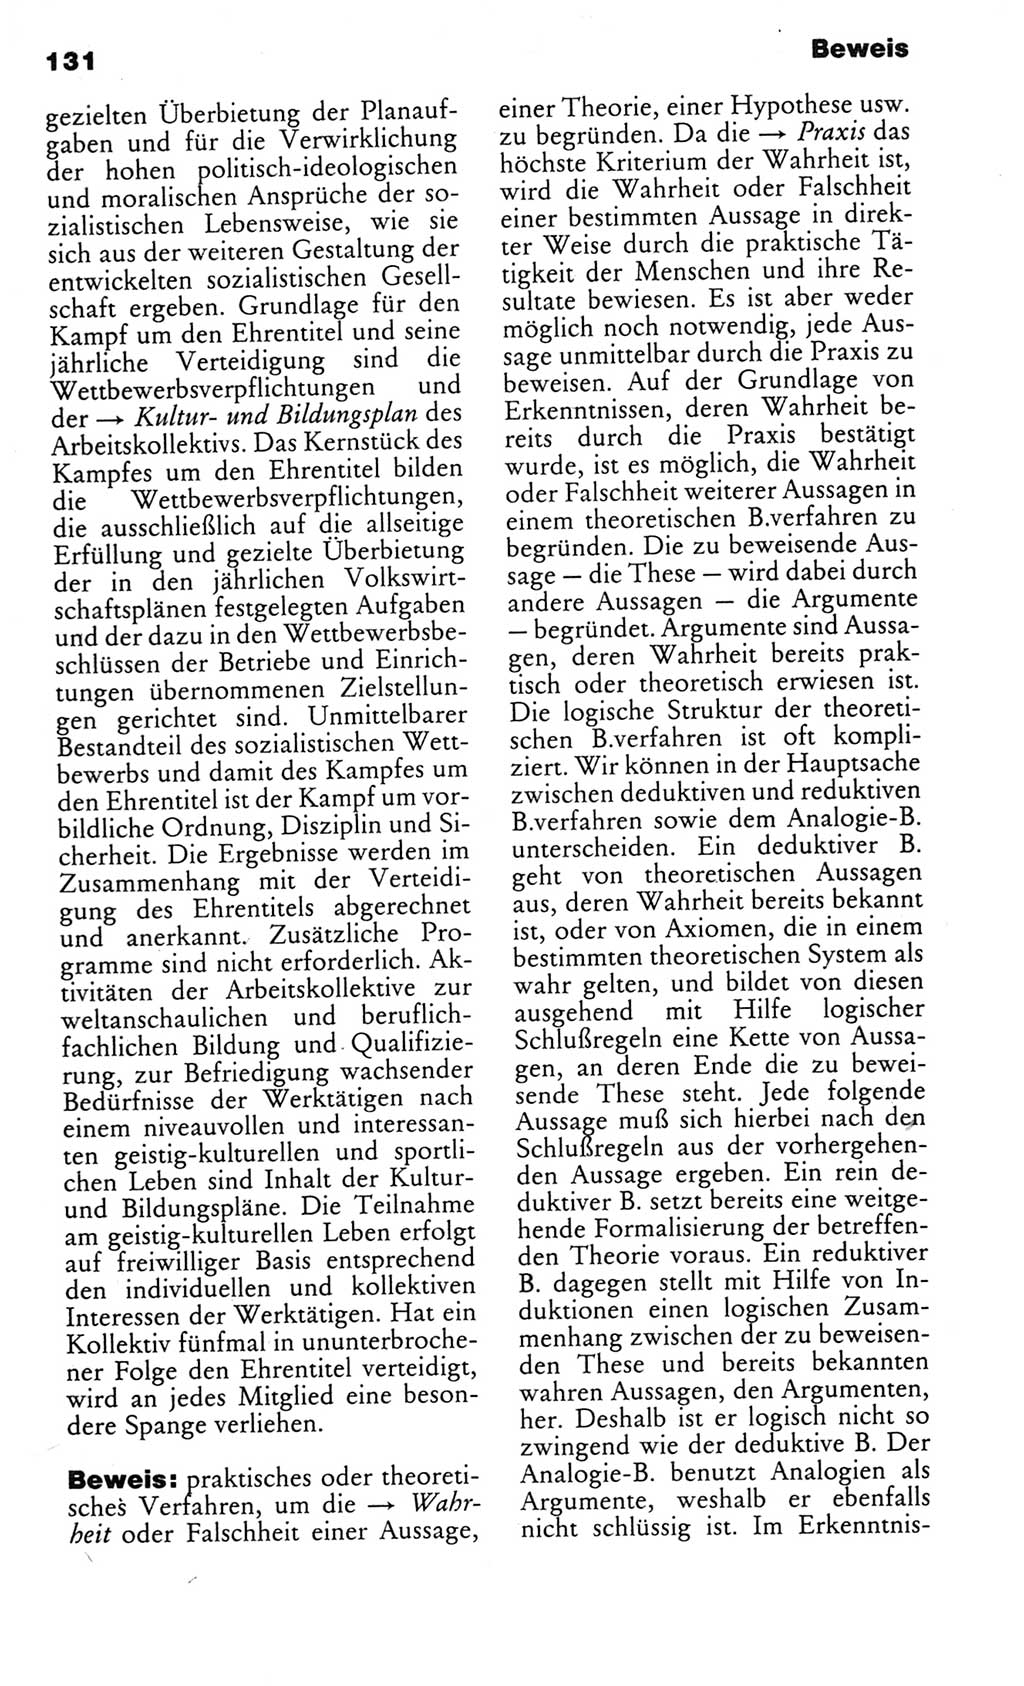 Kleines politisches Wörterbuch [Deutsche Demokratische Republik (DDR)] 1983, Seite 131 (Kl. pol. Wb. DDR 1983, S. 131)